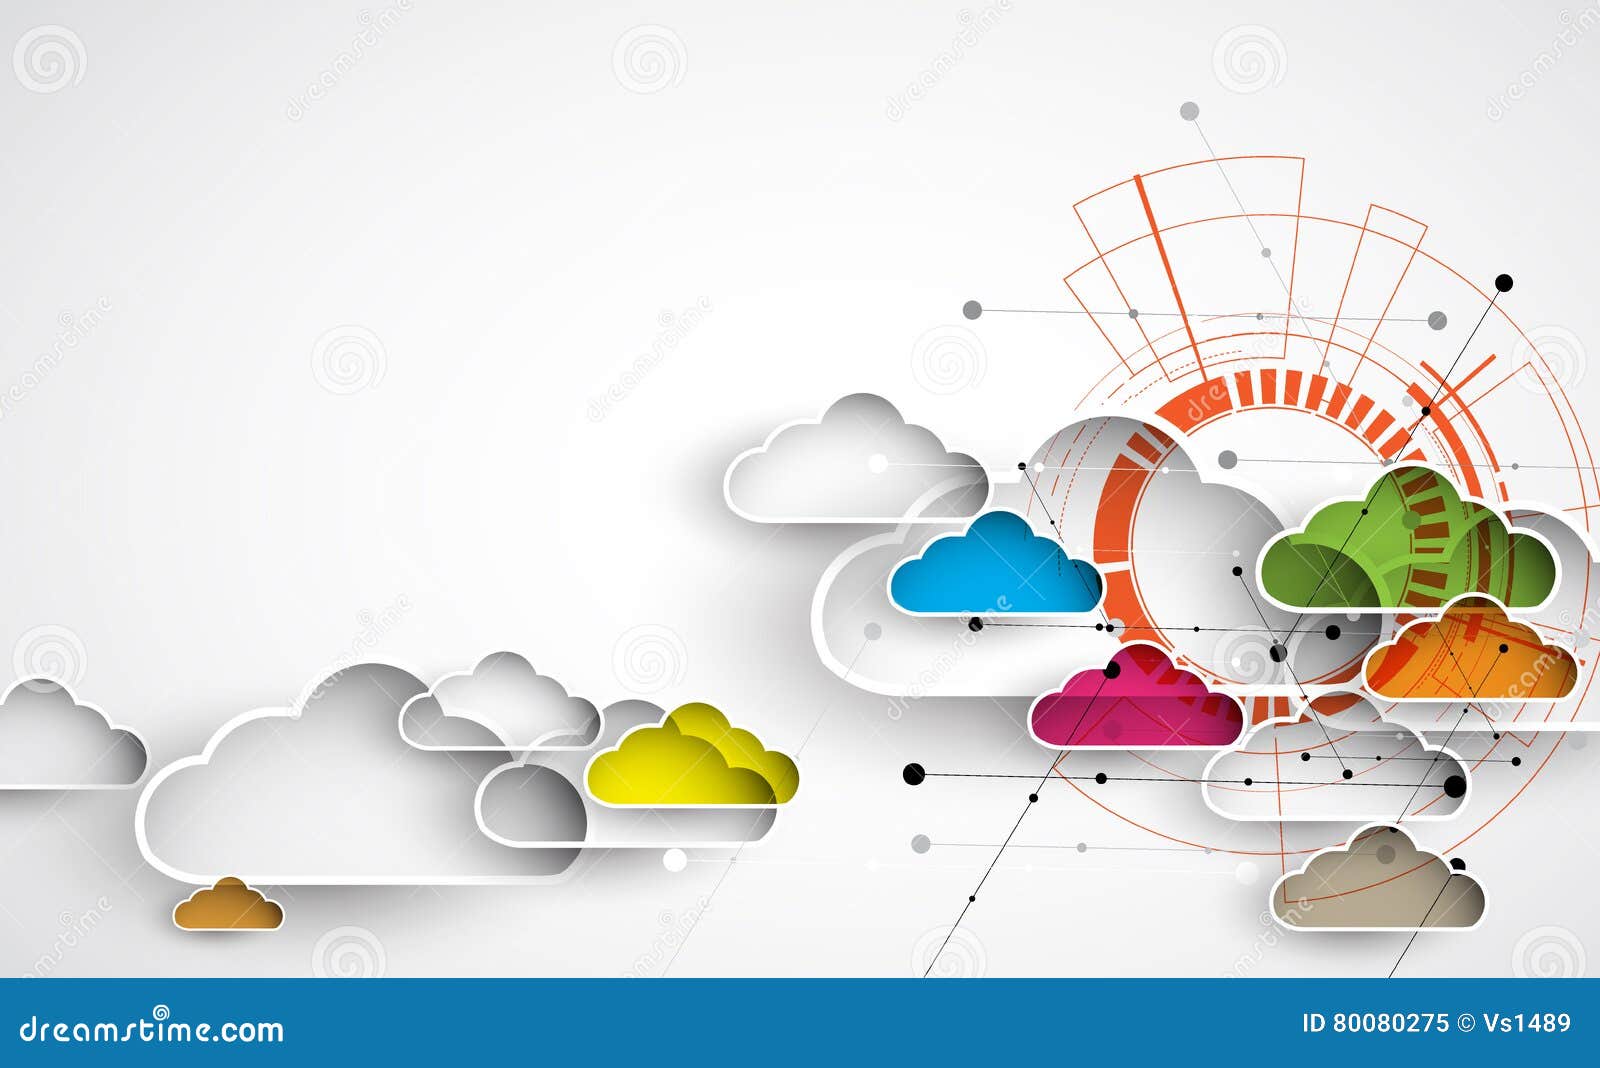 modern cloud technology. integrated digital web concept